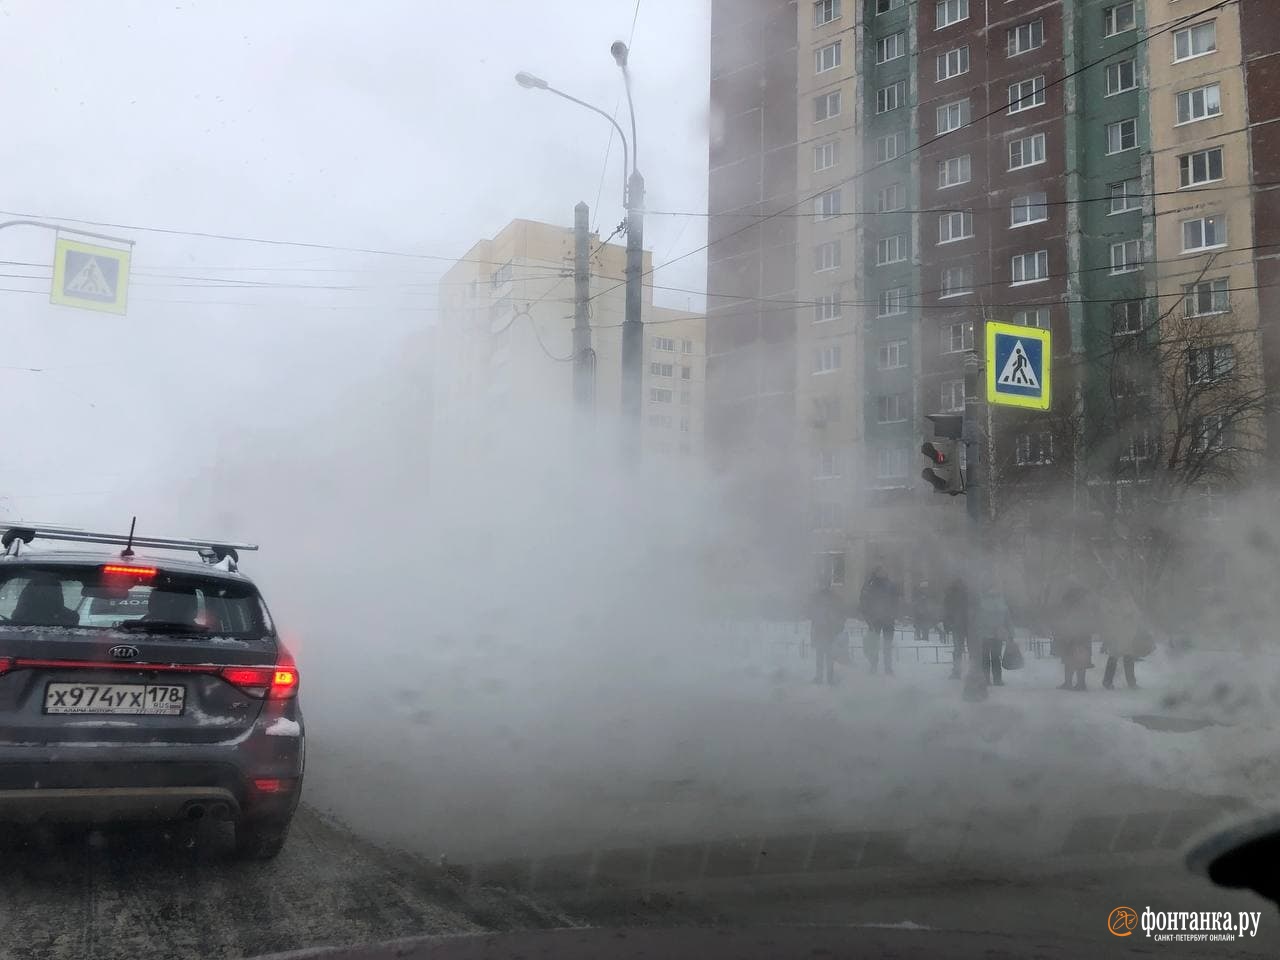 На юго-западе Петербурга прорыв — водители едут прямо в лужу кипятка